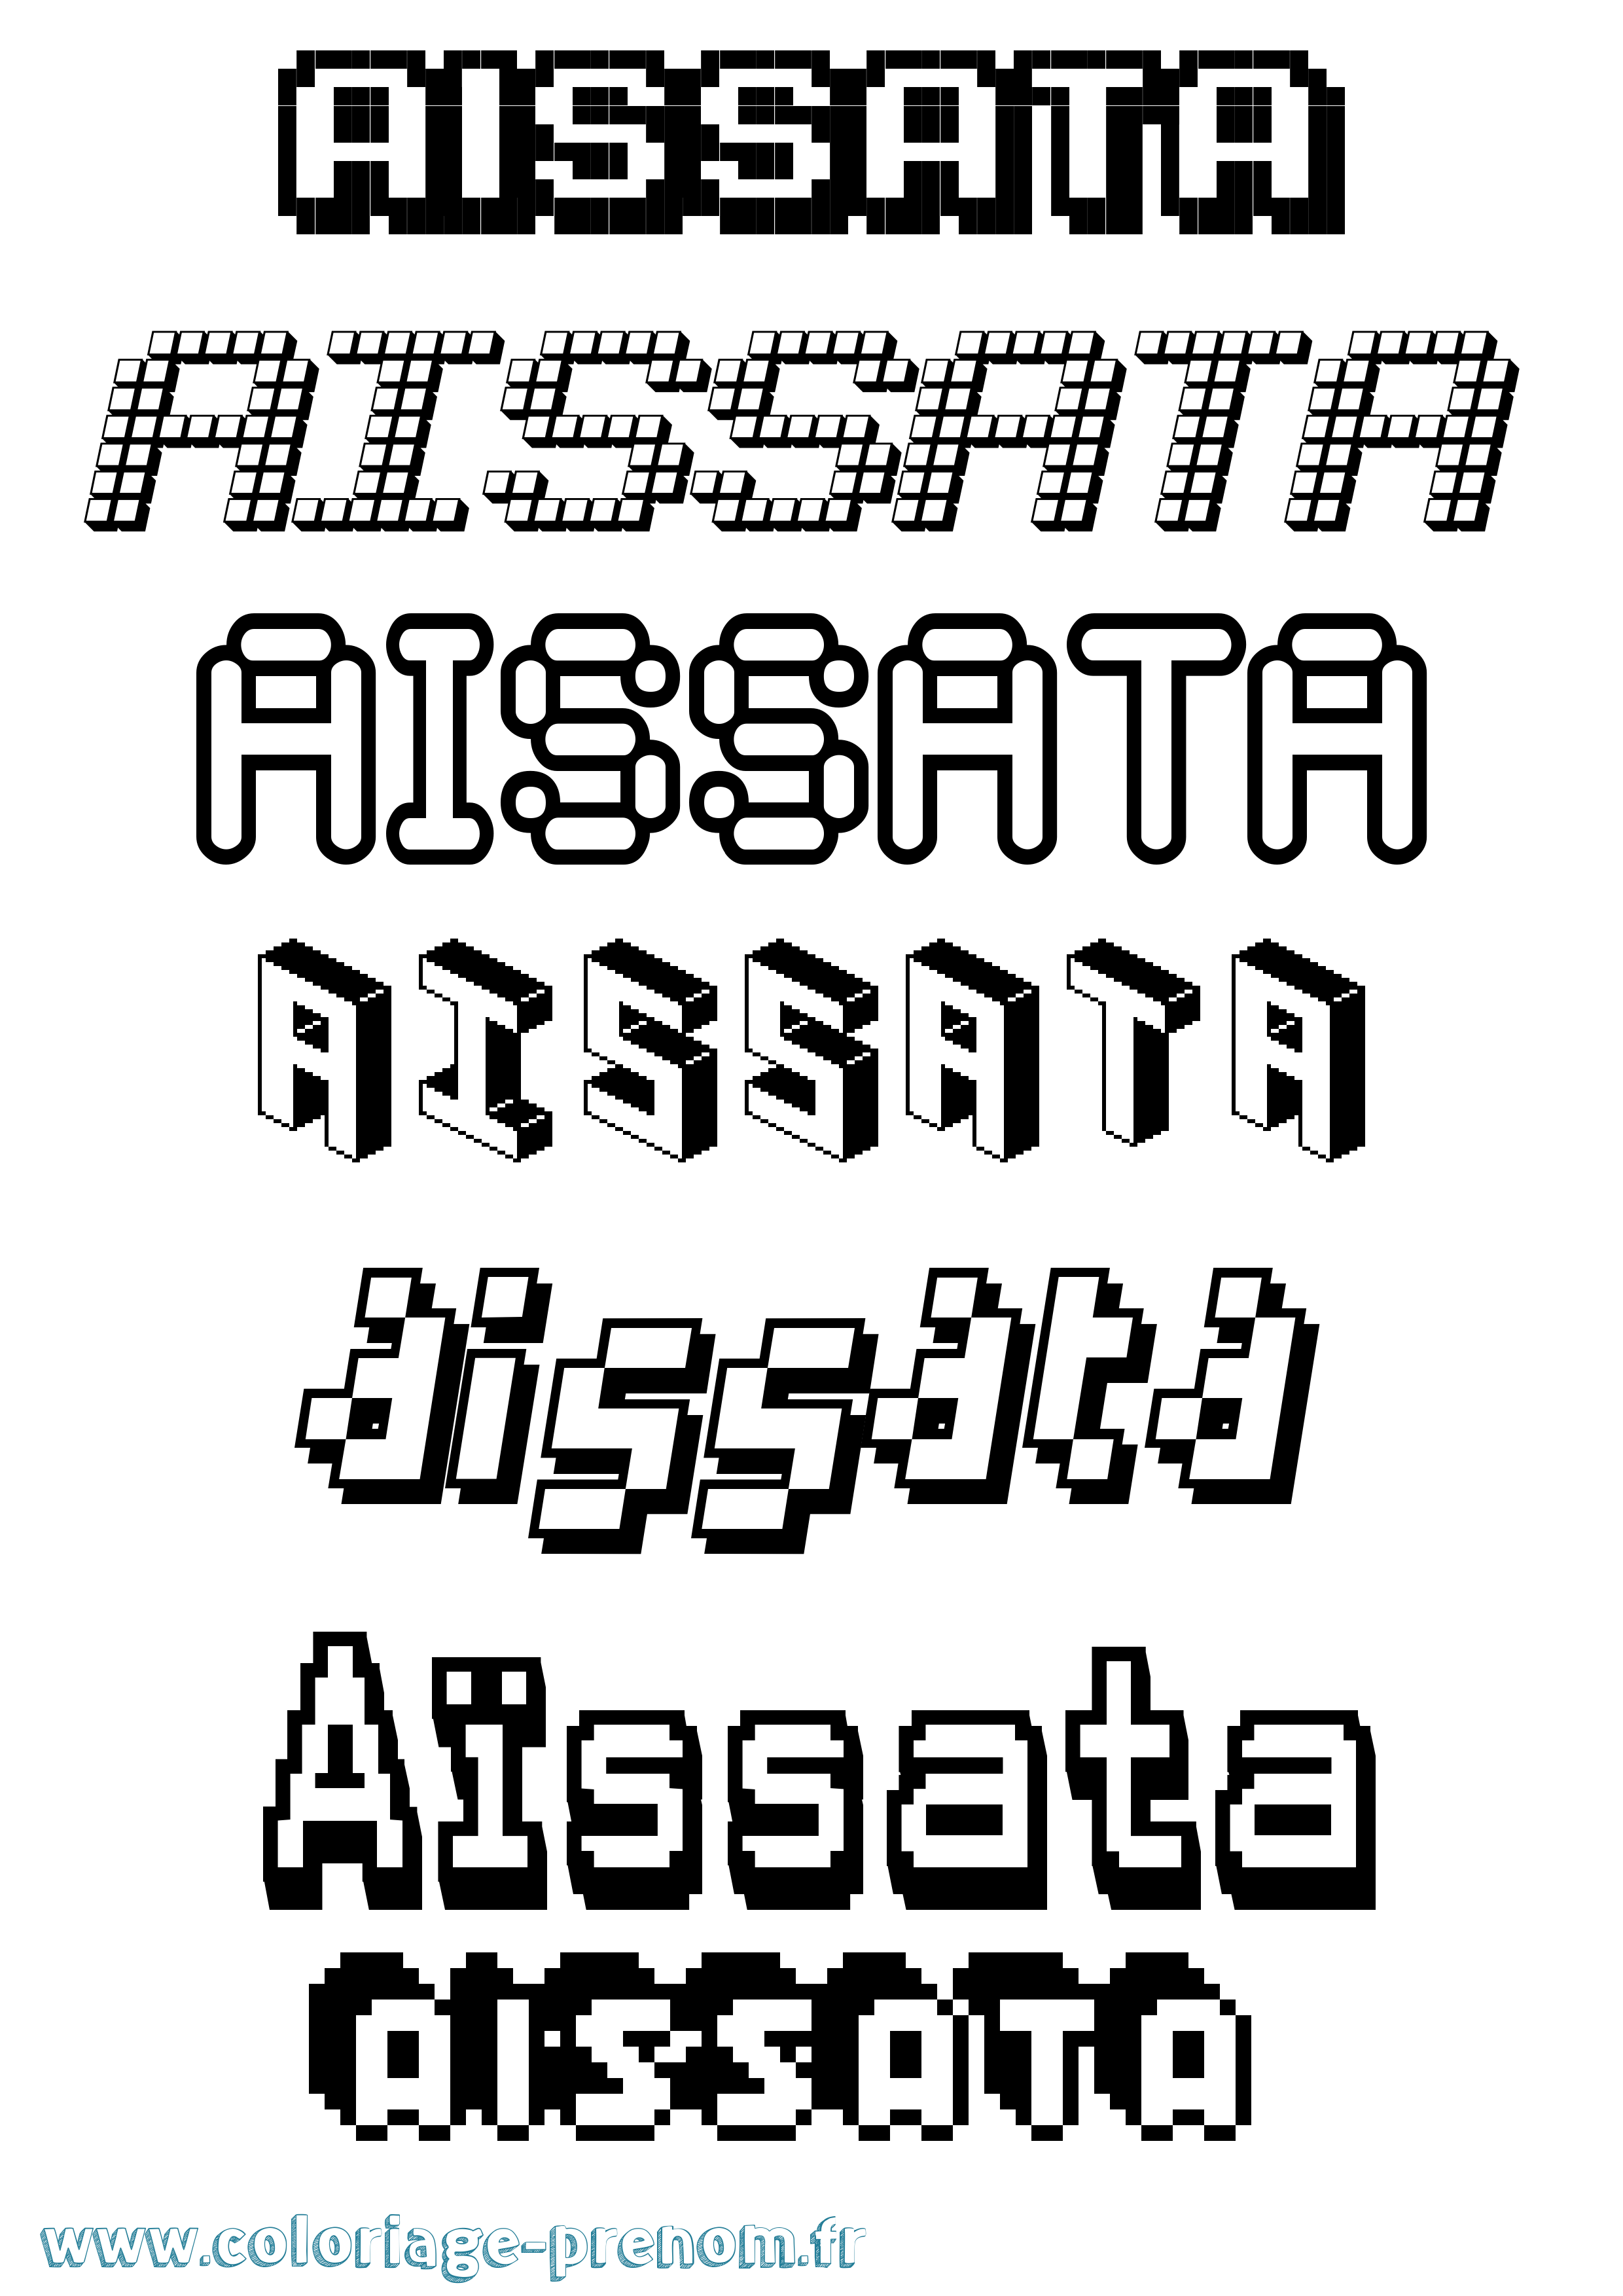 Coloriage prénom Aïssata